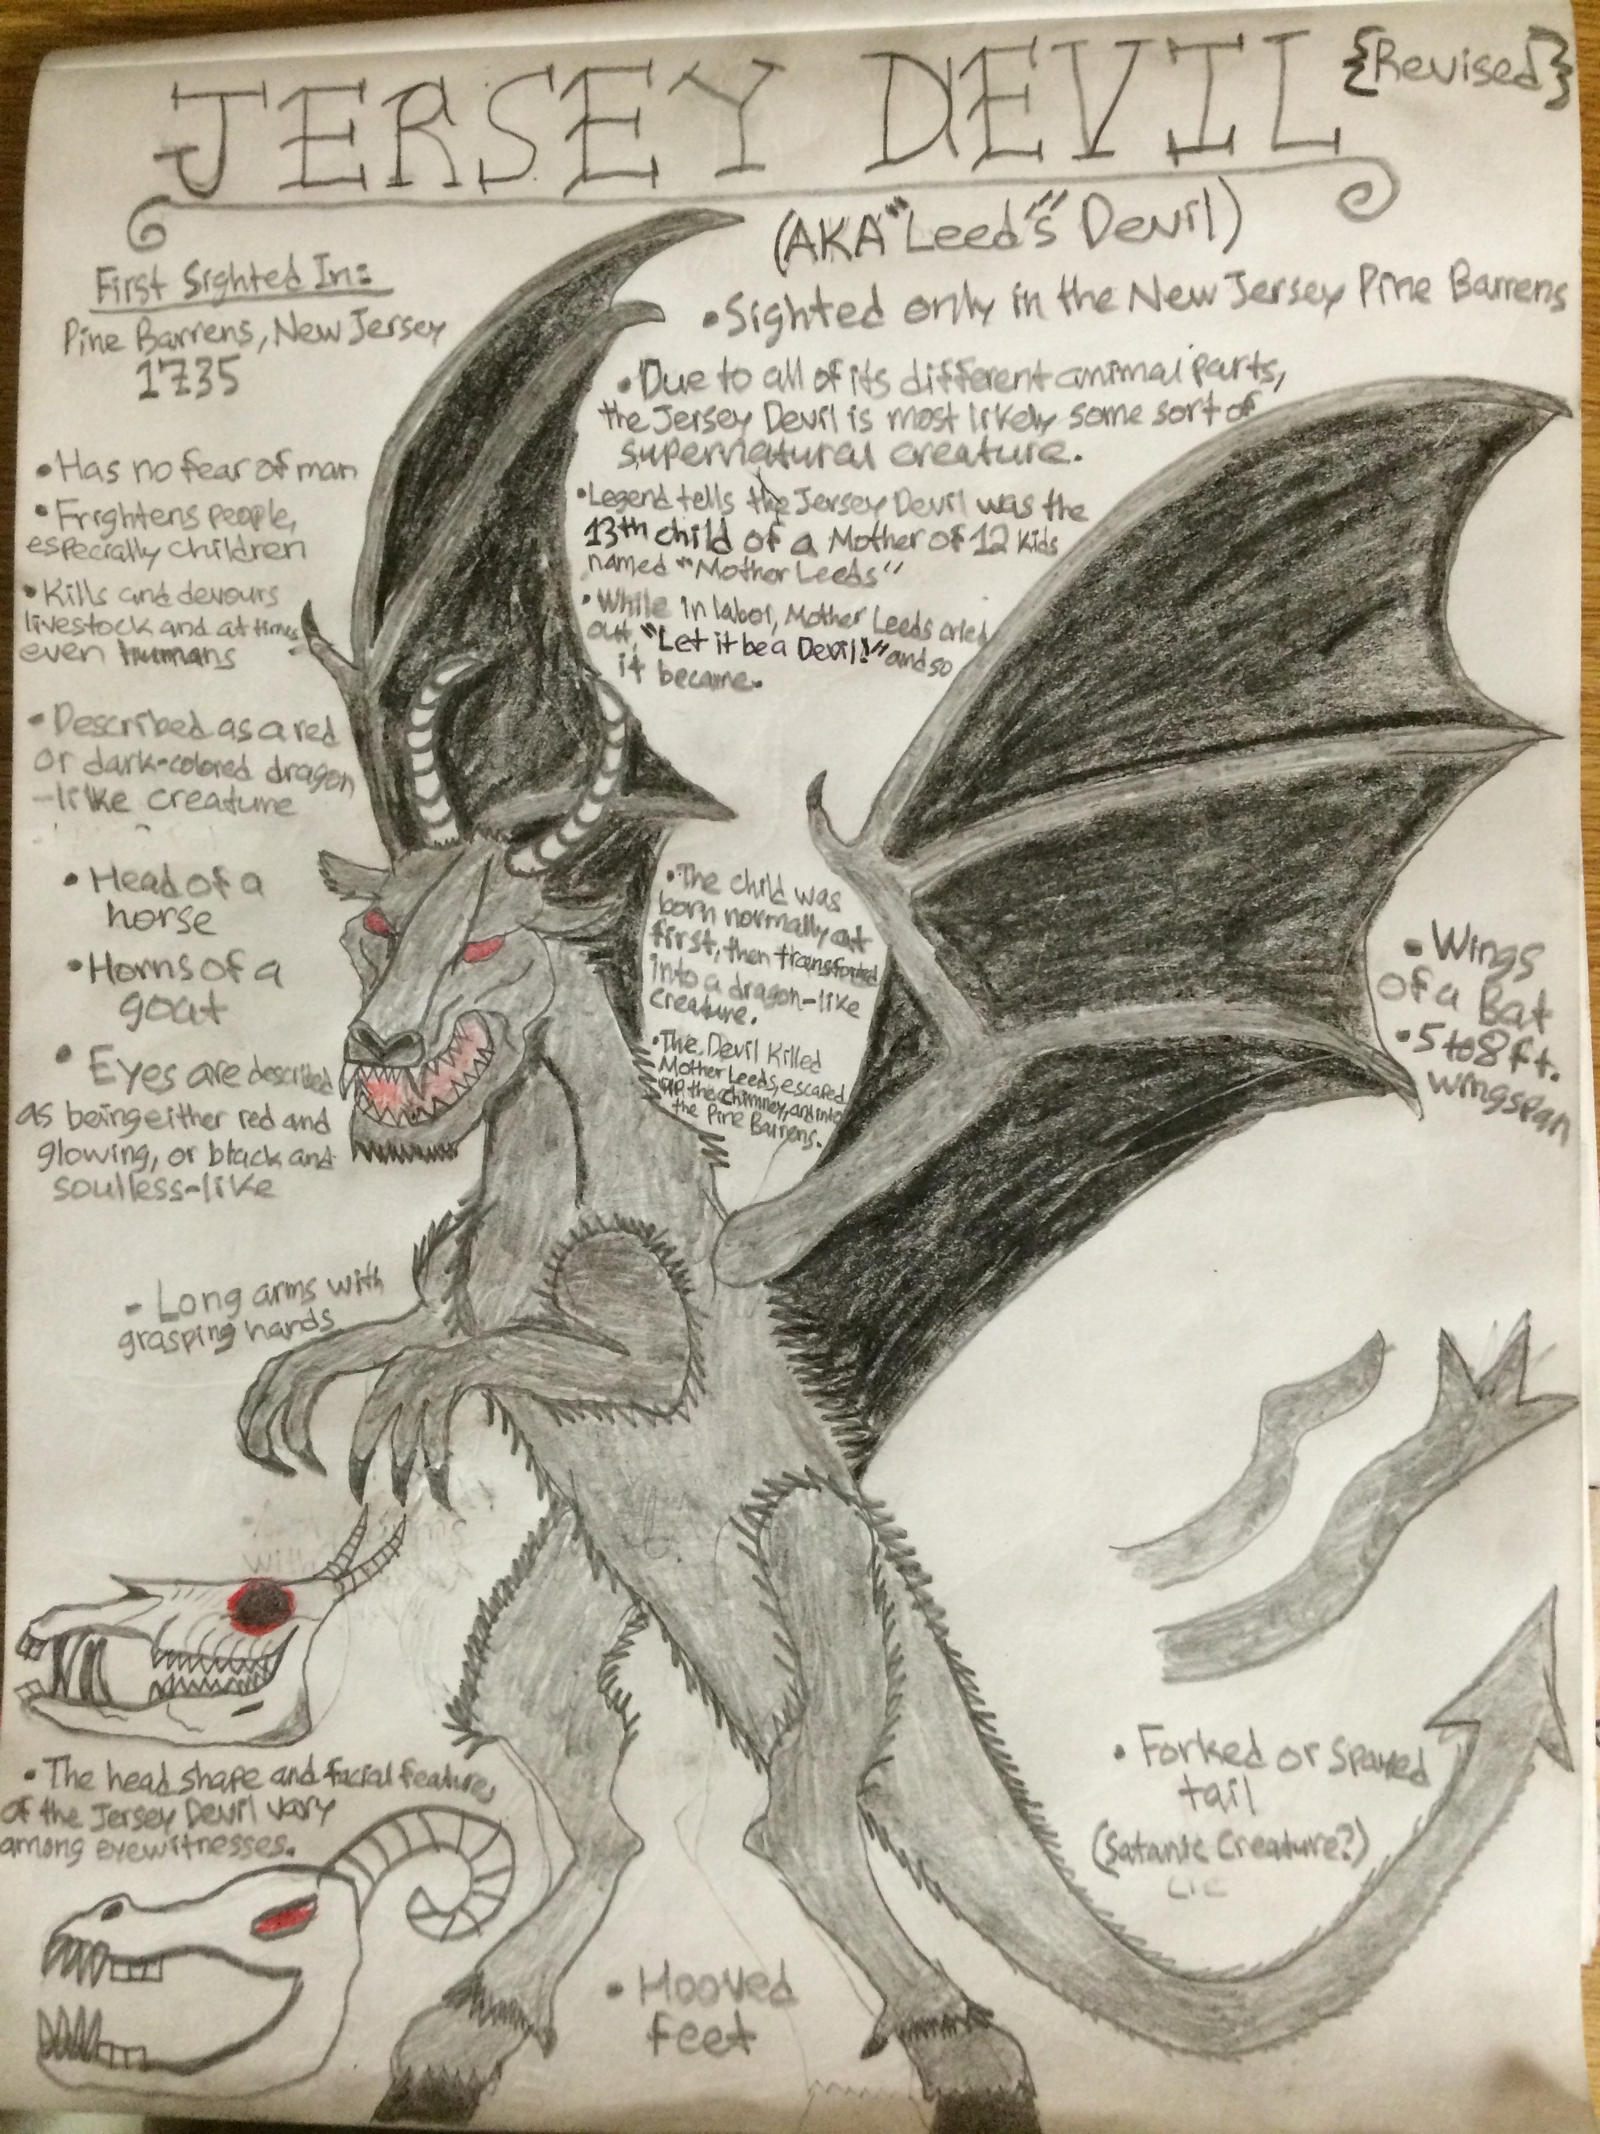 Devil's skin 👹 I really missed drawing Eddy u.u . #sketch #doodle